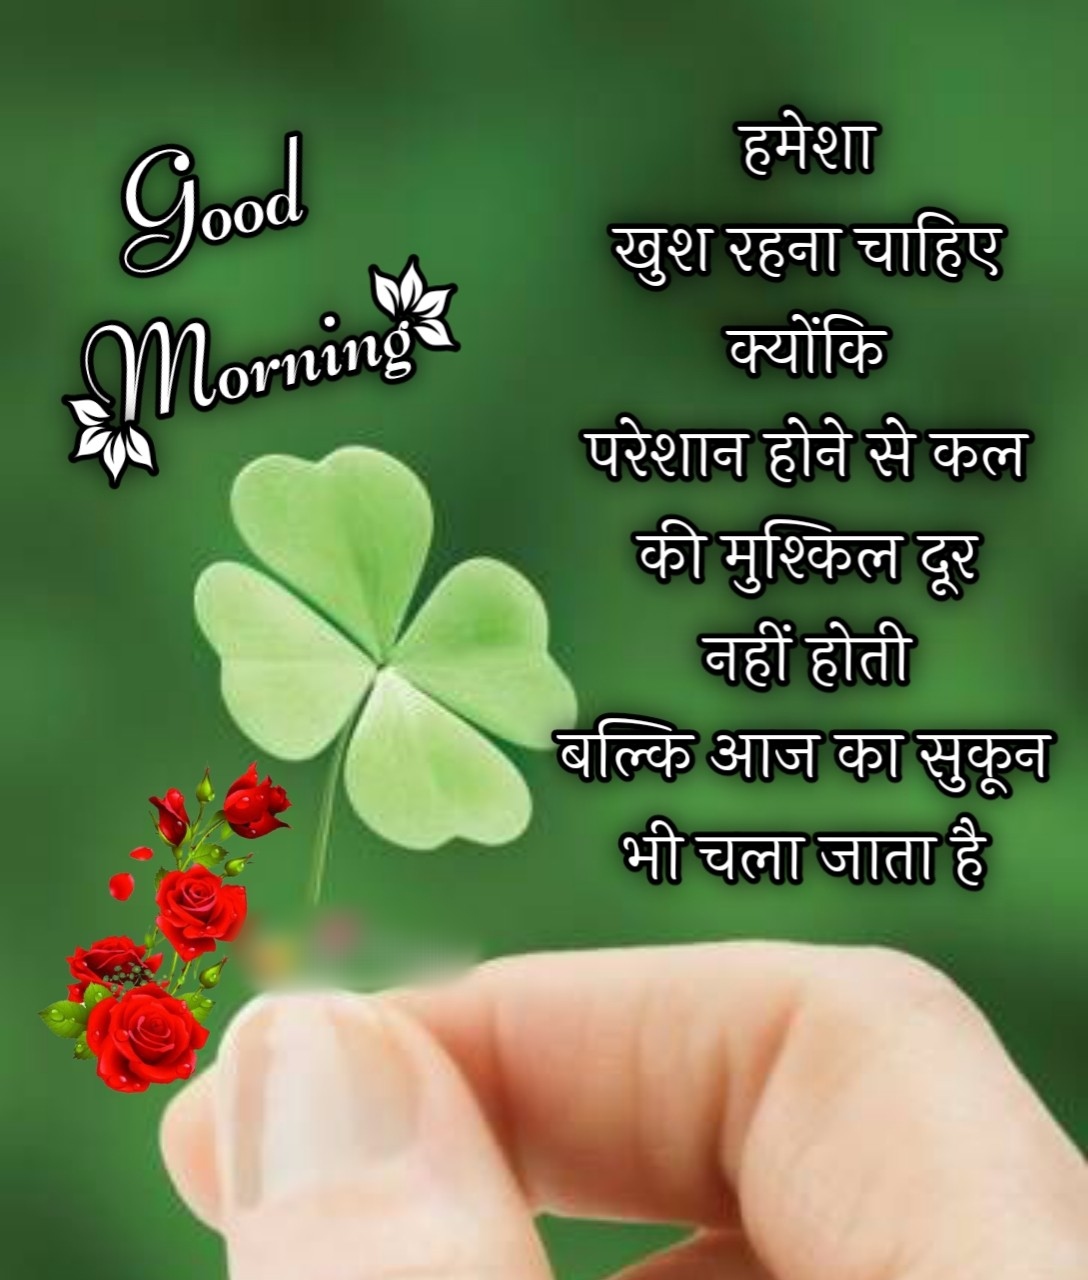 Good Morning Images Hindi New ()